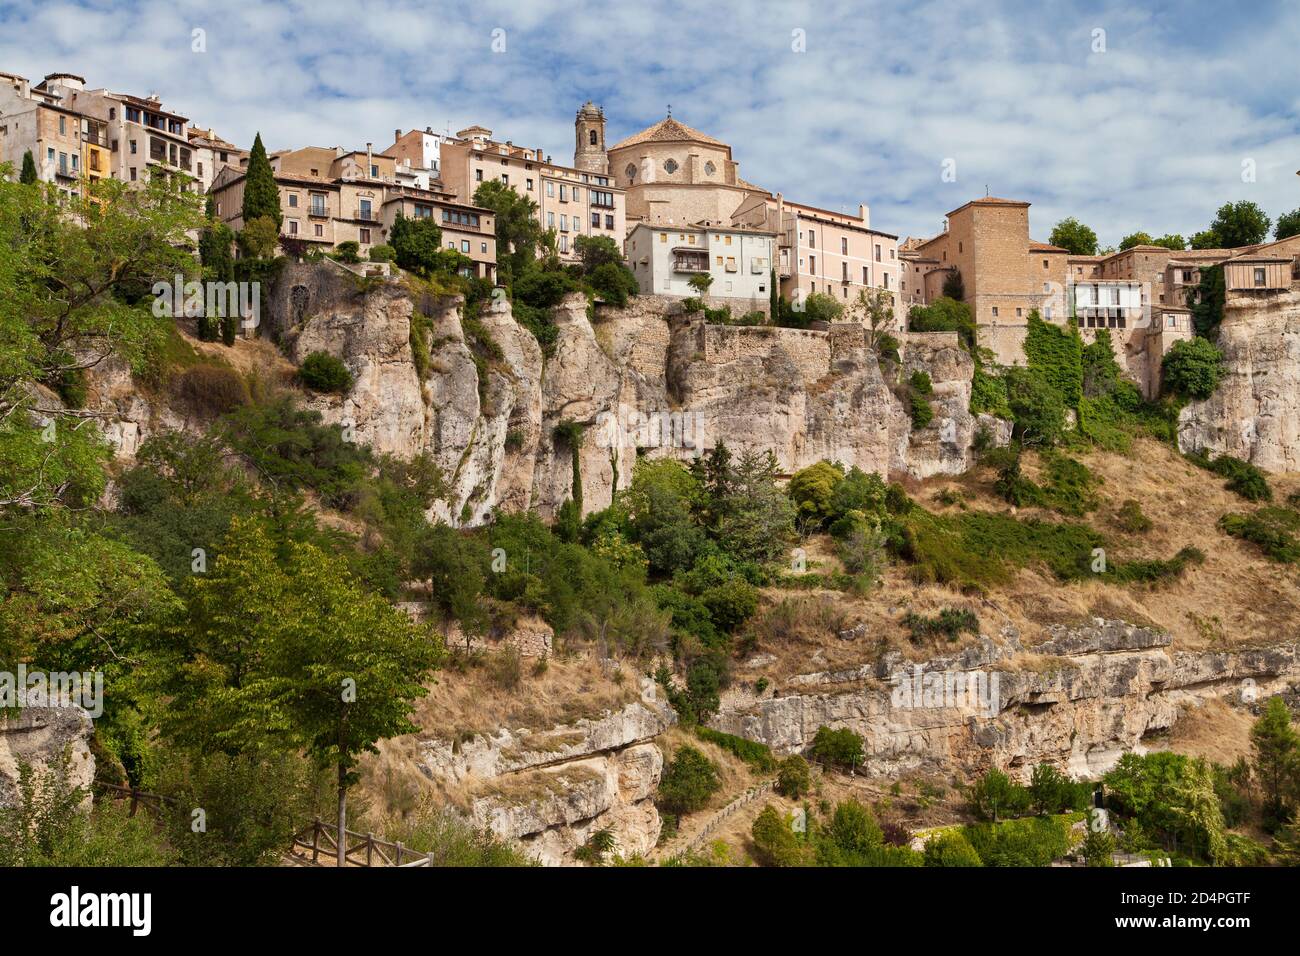 Neighborhood of San Pedro in Cuenca, Spain. Stock Photo